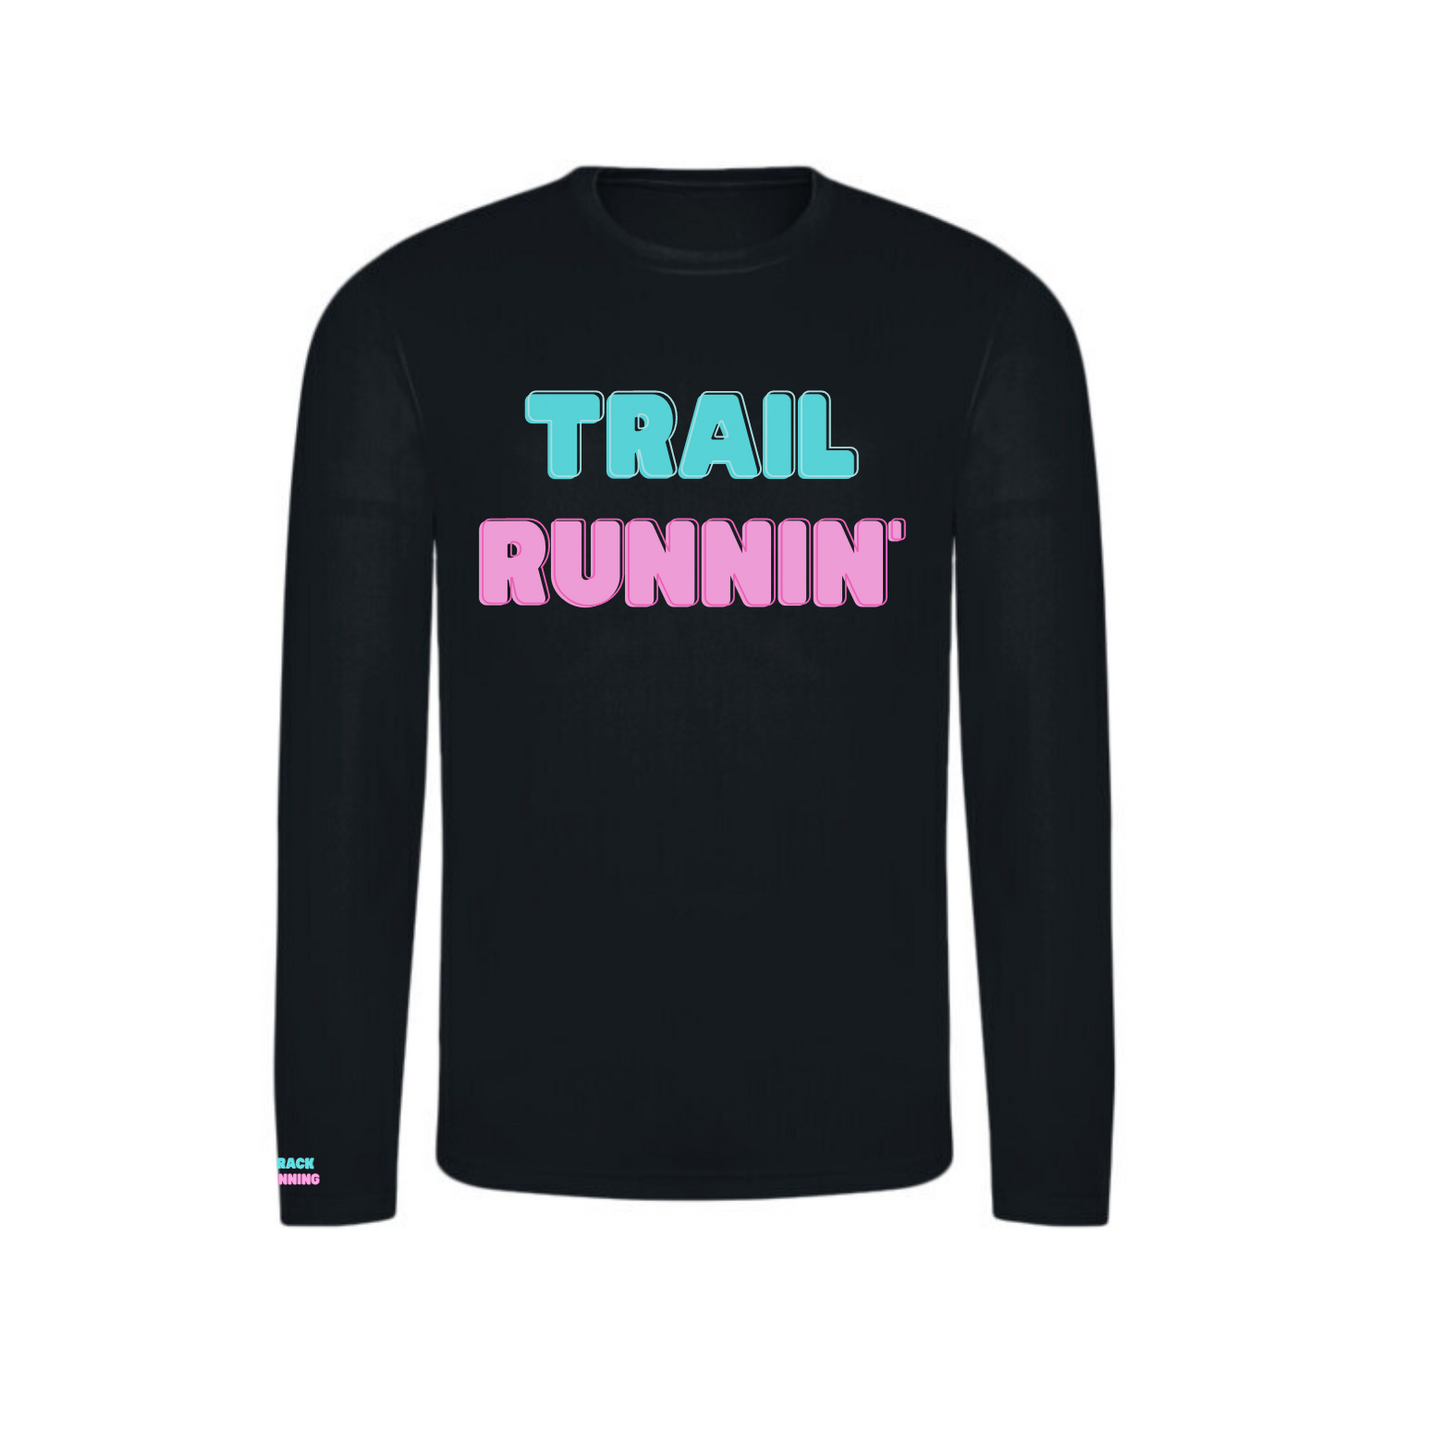 Trail Runnin' - Shirt